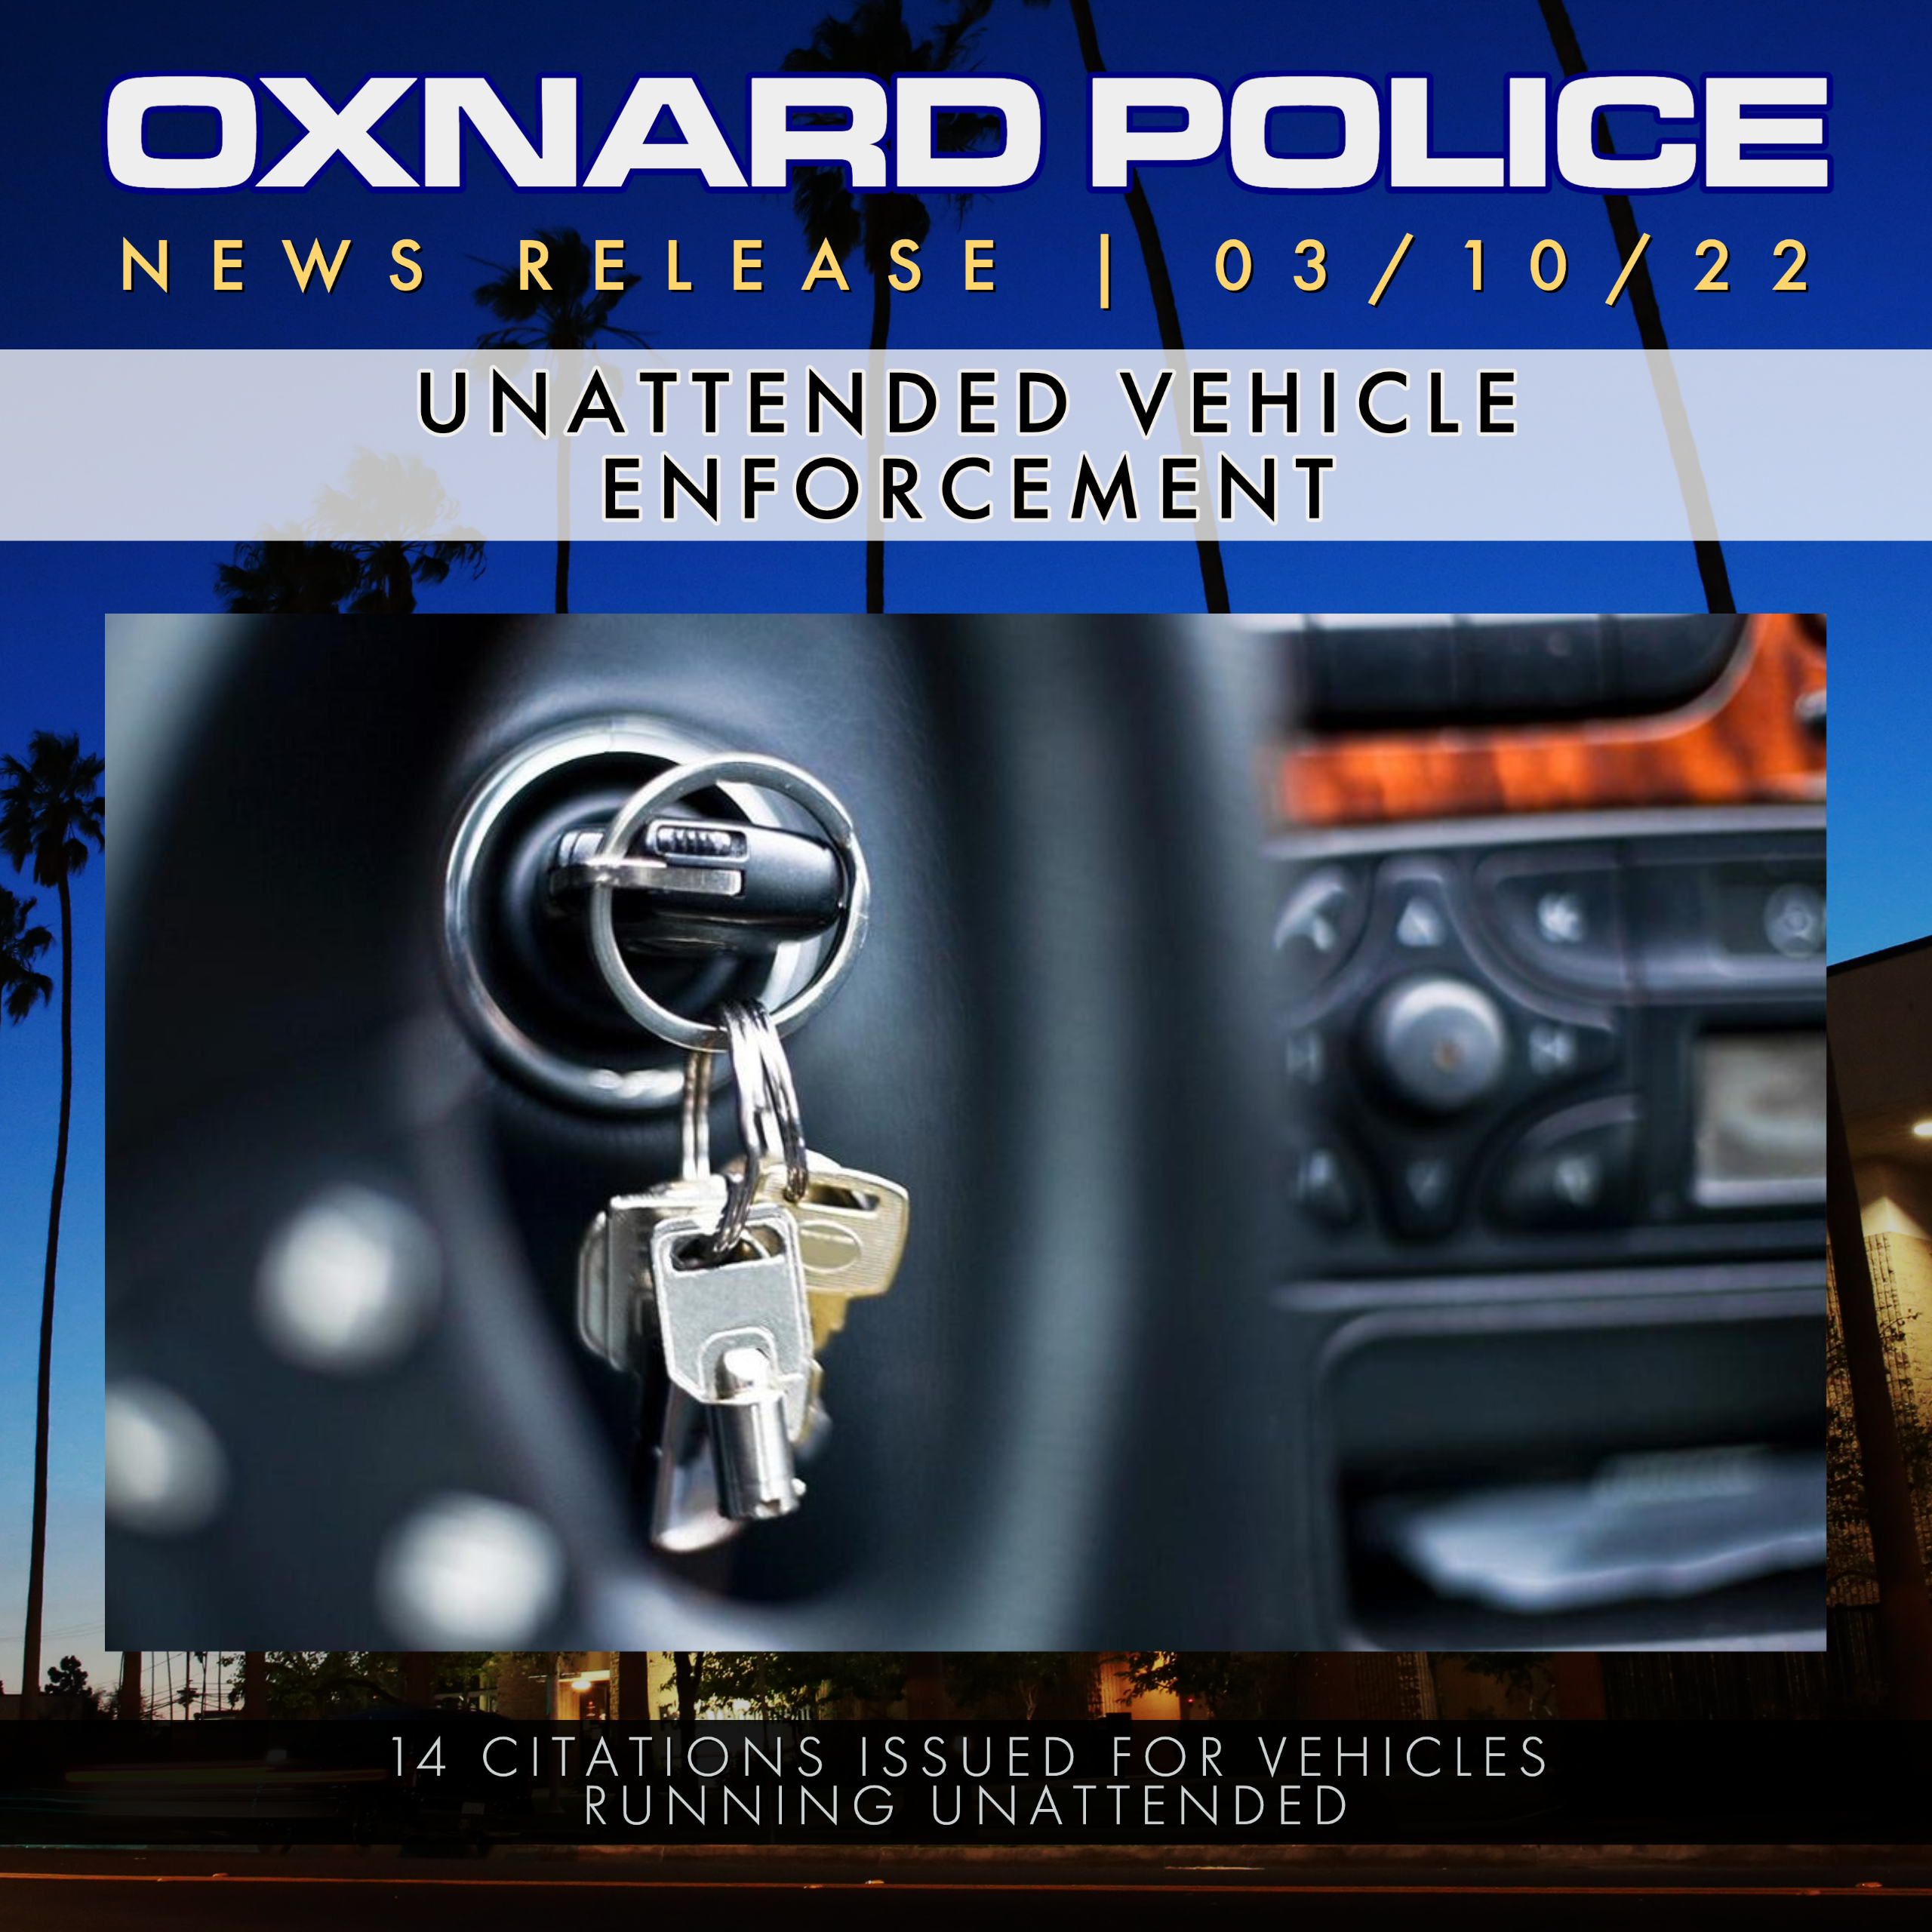 PR 03 10 22.localizar y arrestar proactivamente a los responsables de robos de vehículos en Oxnard